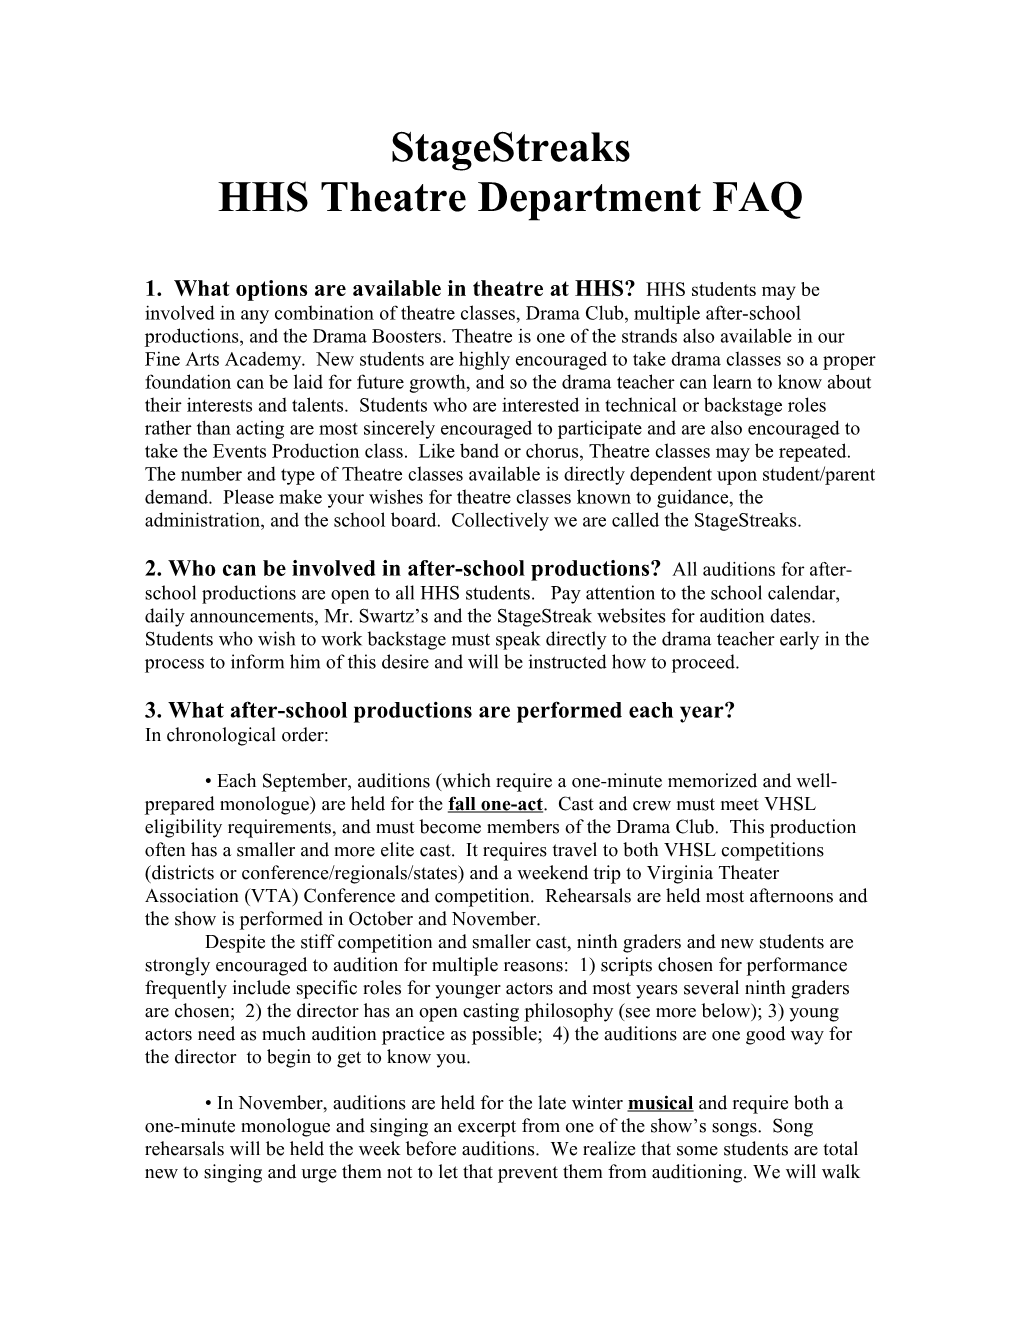 HHS Drama Department FAQ